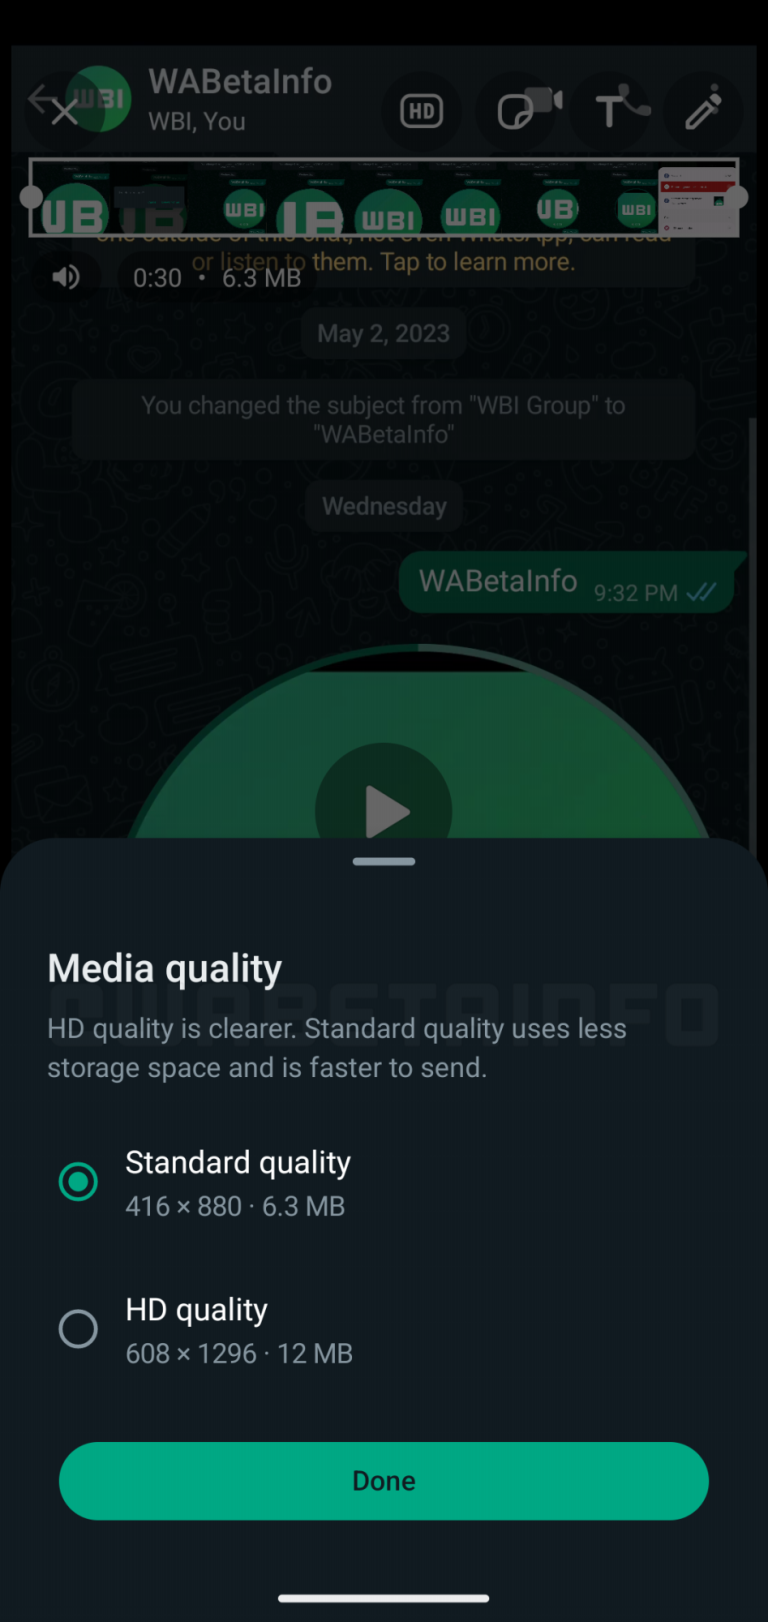 $!La nueva herramienta permitirá enviar los vídeos en dos calidades: estándar y HD.